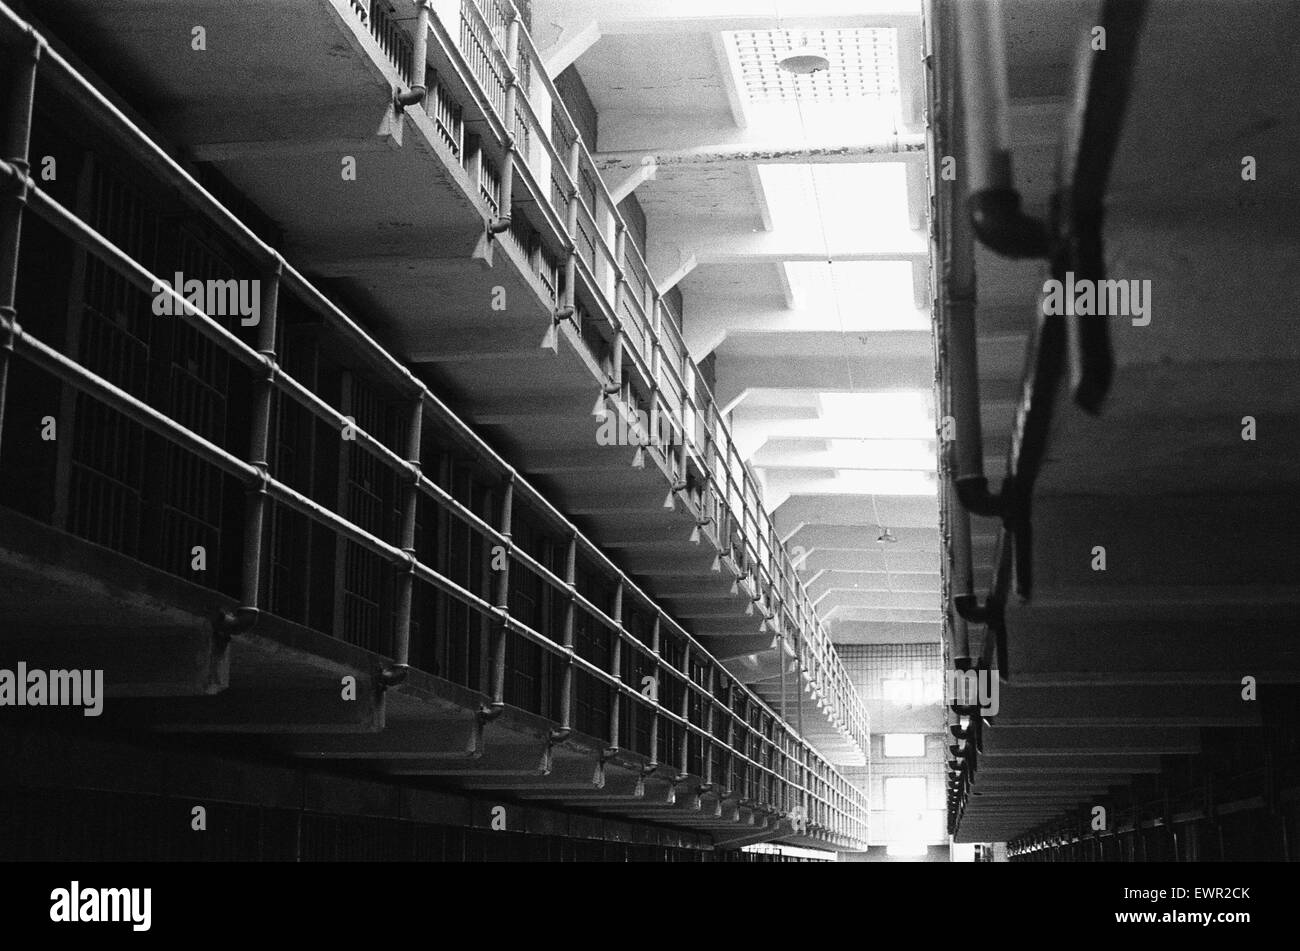 Innere einer Zelle im Gefängnis Alcatraz, San Francisco Bay wird unterbunden. September 1979 das Gefängnis wurde ursprünglich von der US-Armee im Jahre 1910 gebaut und übergab das United States Department of Justice am 12. Oktober 1933 als ein Hochsicherheitsgefängnis. Angesichts der locat Stockfoto